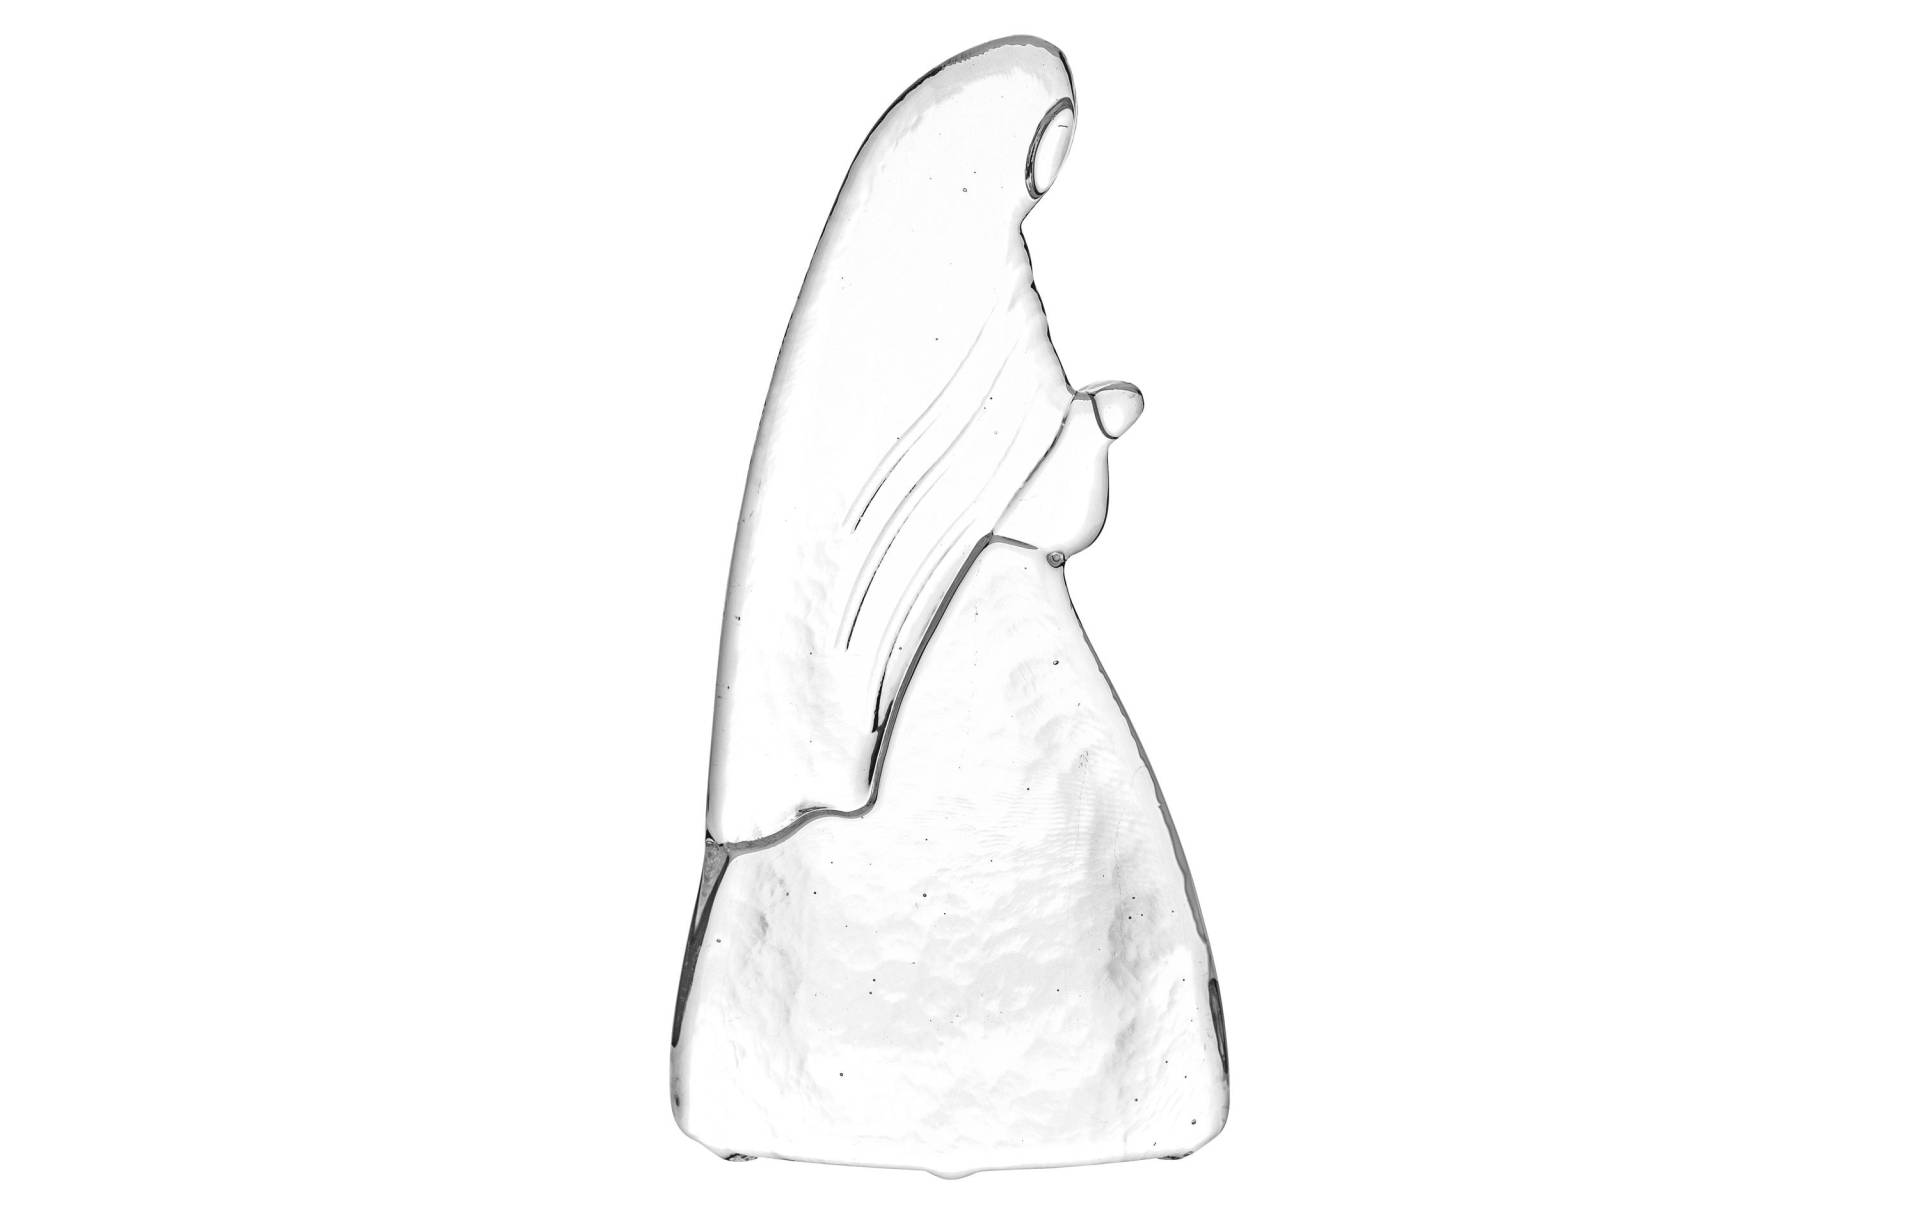 Glasi Hergiswil Krippenfigur »Krippenfigur Maria klein« von Glasi Hergiswil